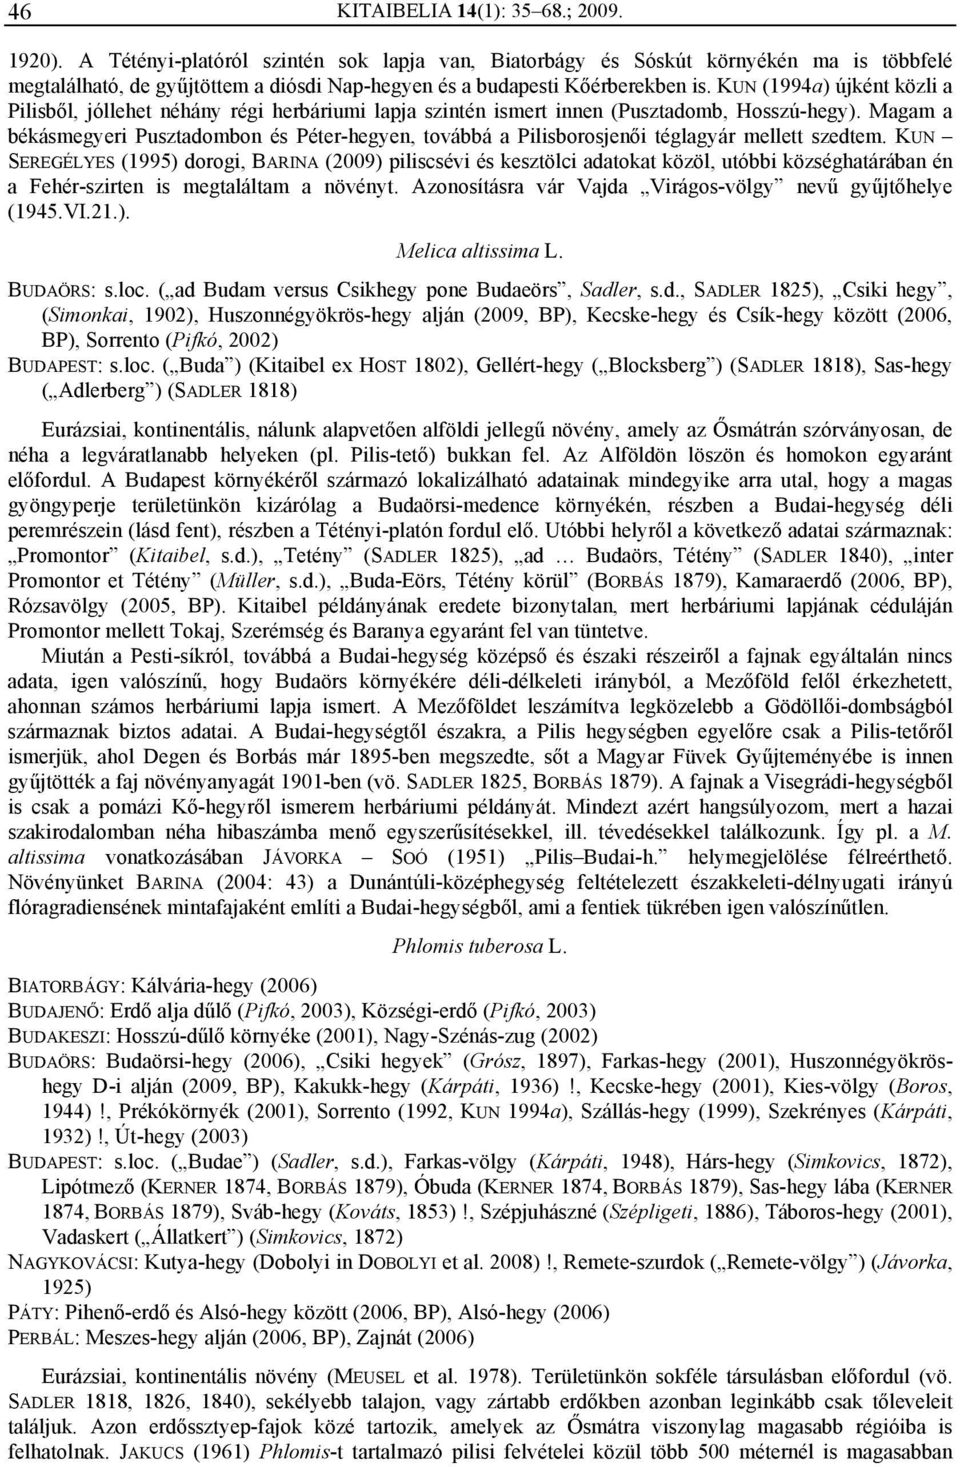 KUN (1994a) újként közli a Pilisből, jóllehet néhány régi herbáriumi lapja szintén ismert innen (Pusztadomb, Hosszú-hegy).